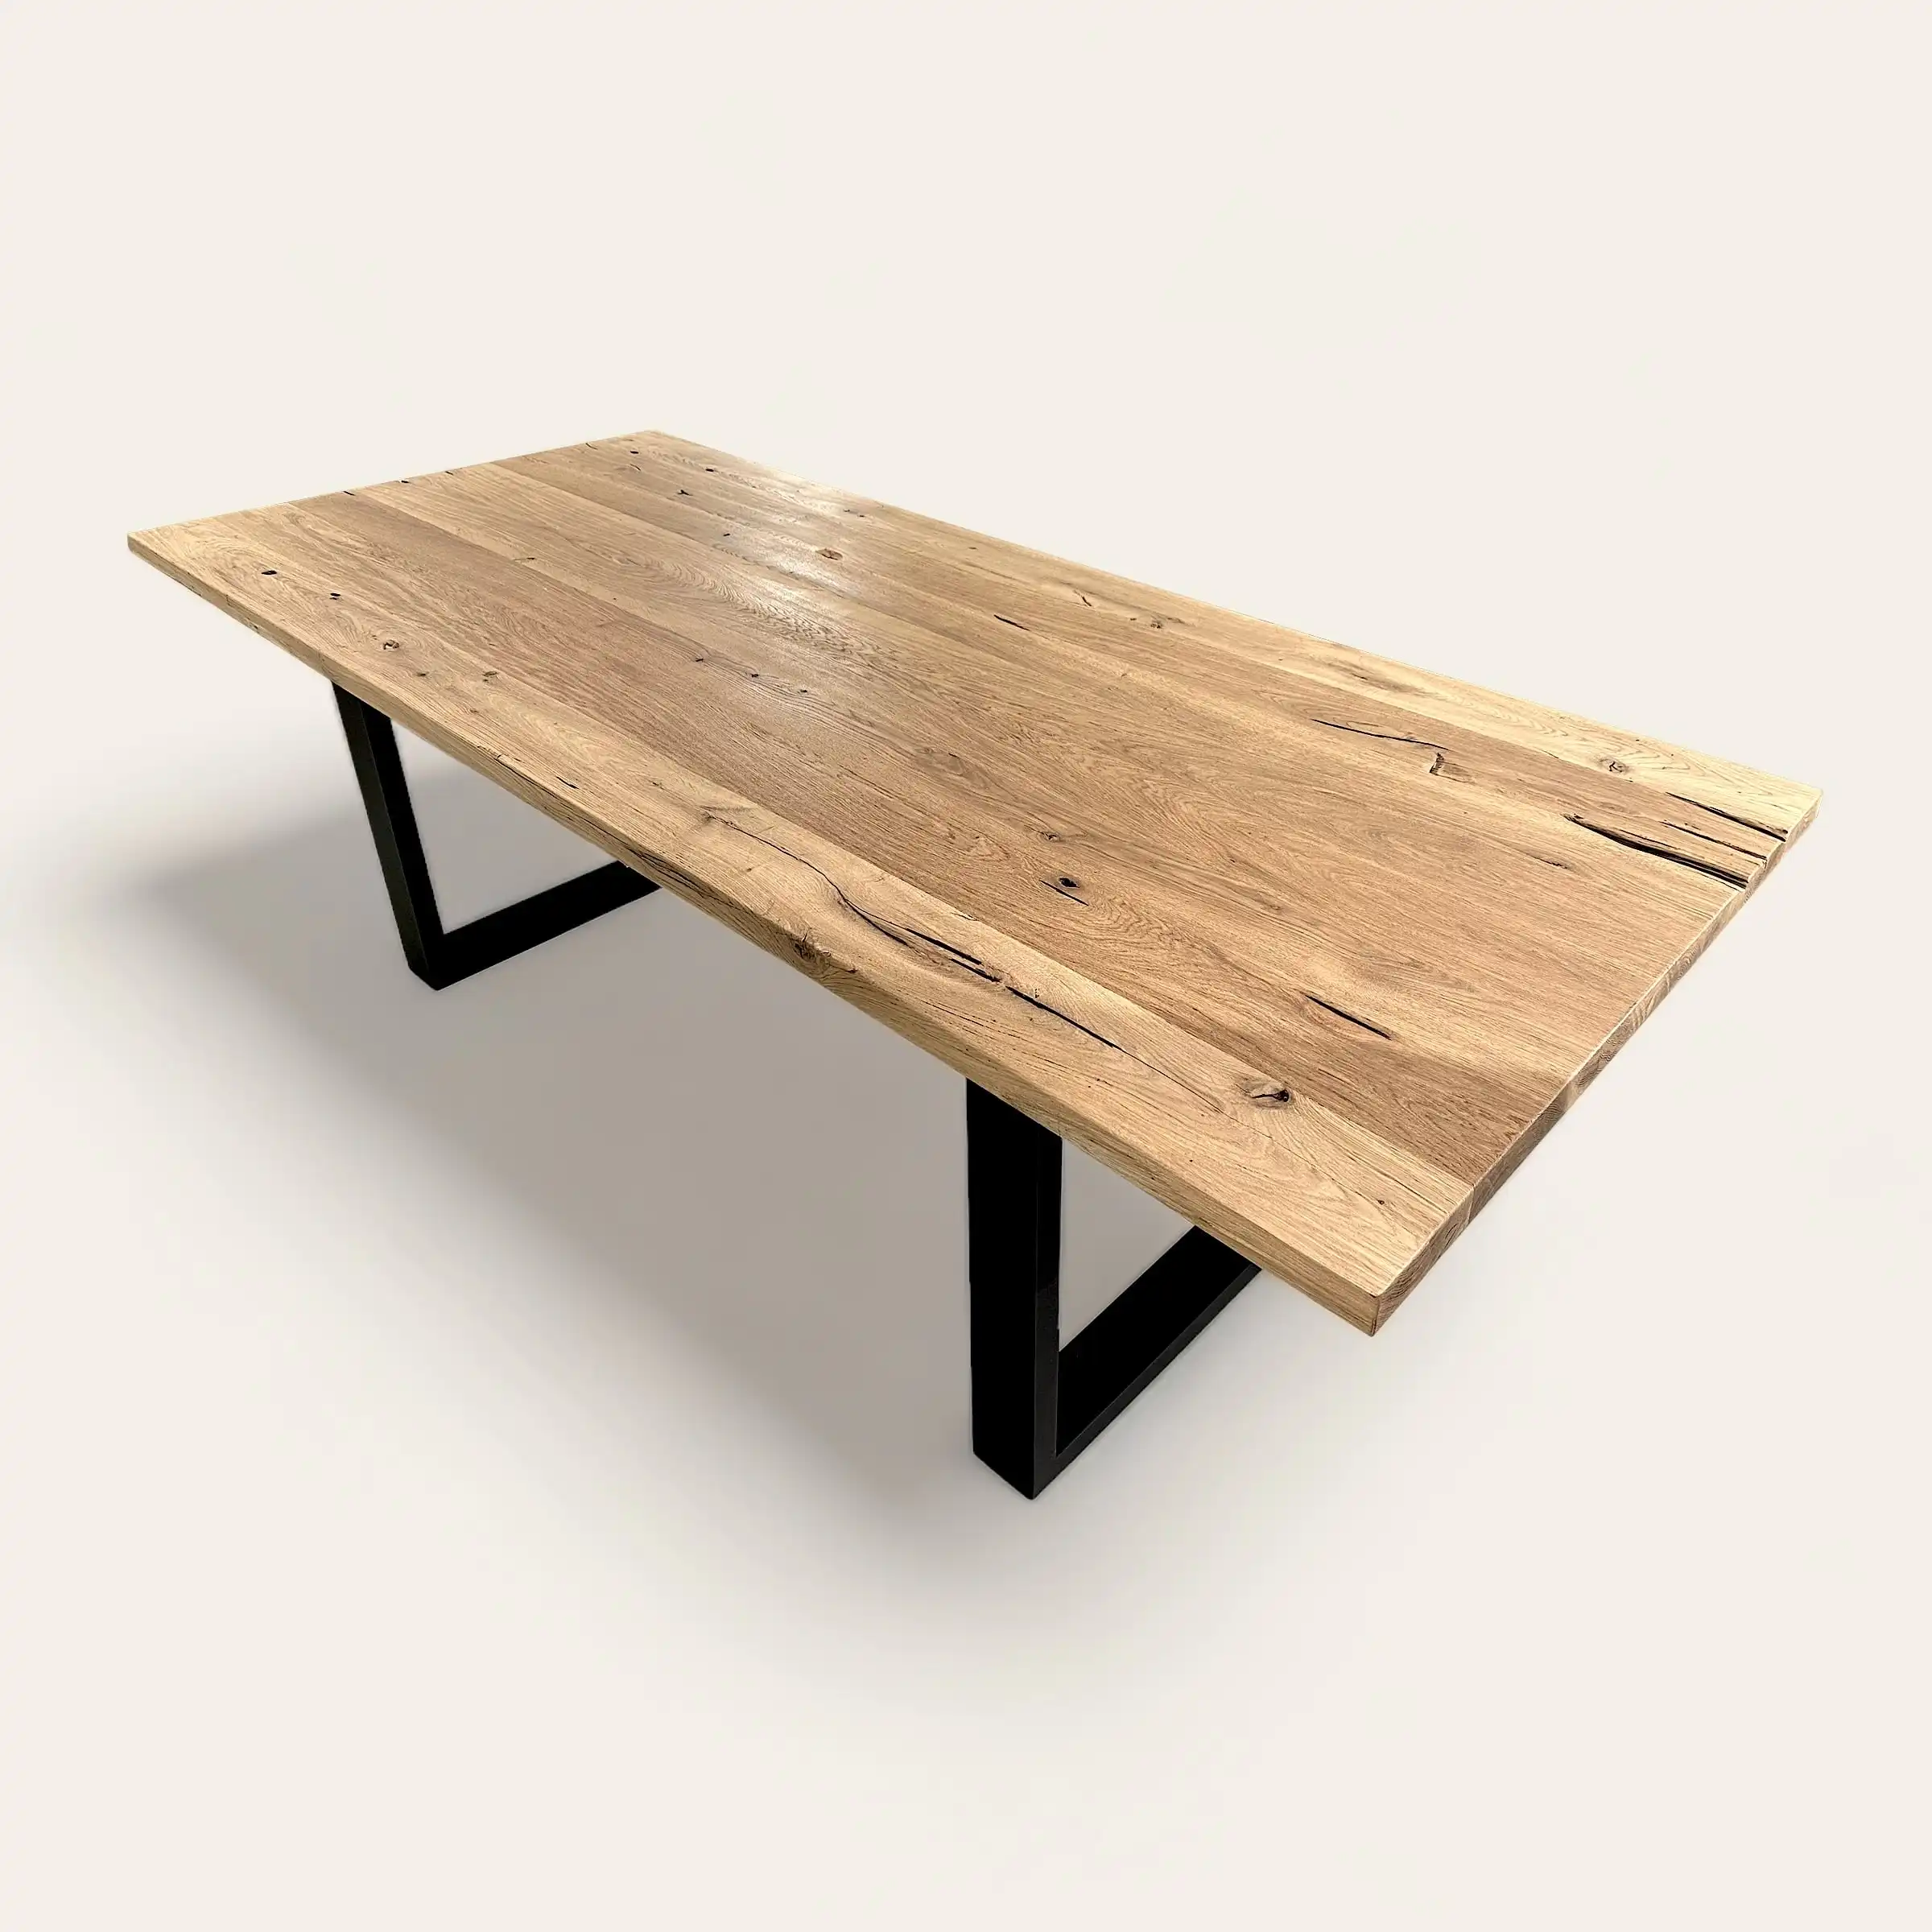  Table rectangulaire en bois ancien avec pieds en V inversé noirs, alliance du charme du bois naturel et de l'élégance du design moderne. 